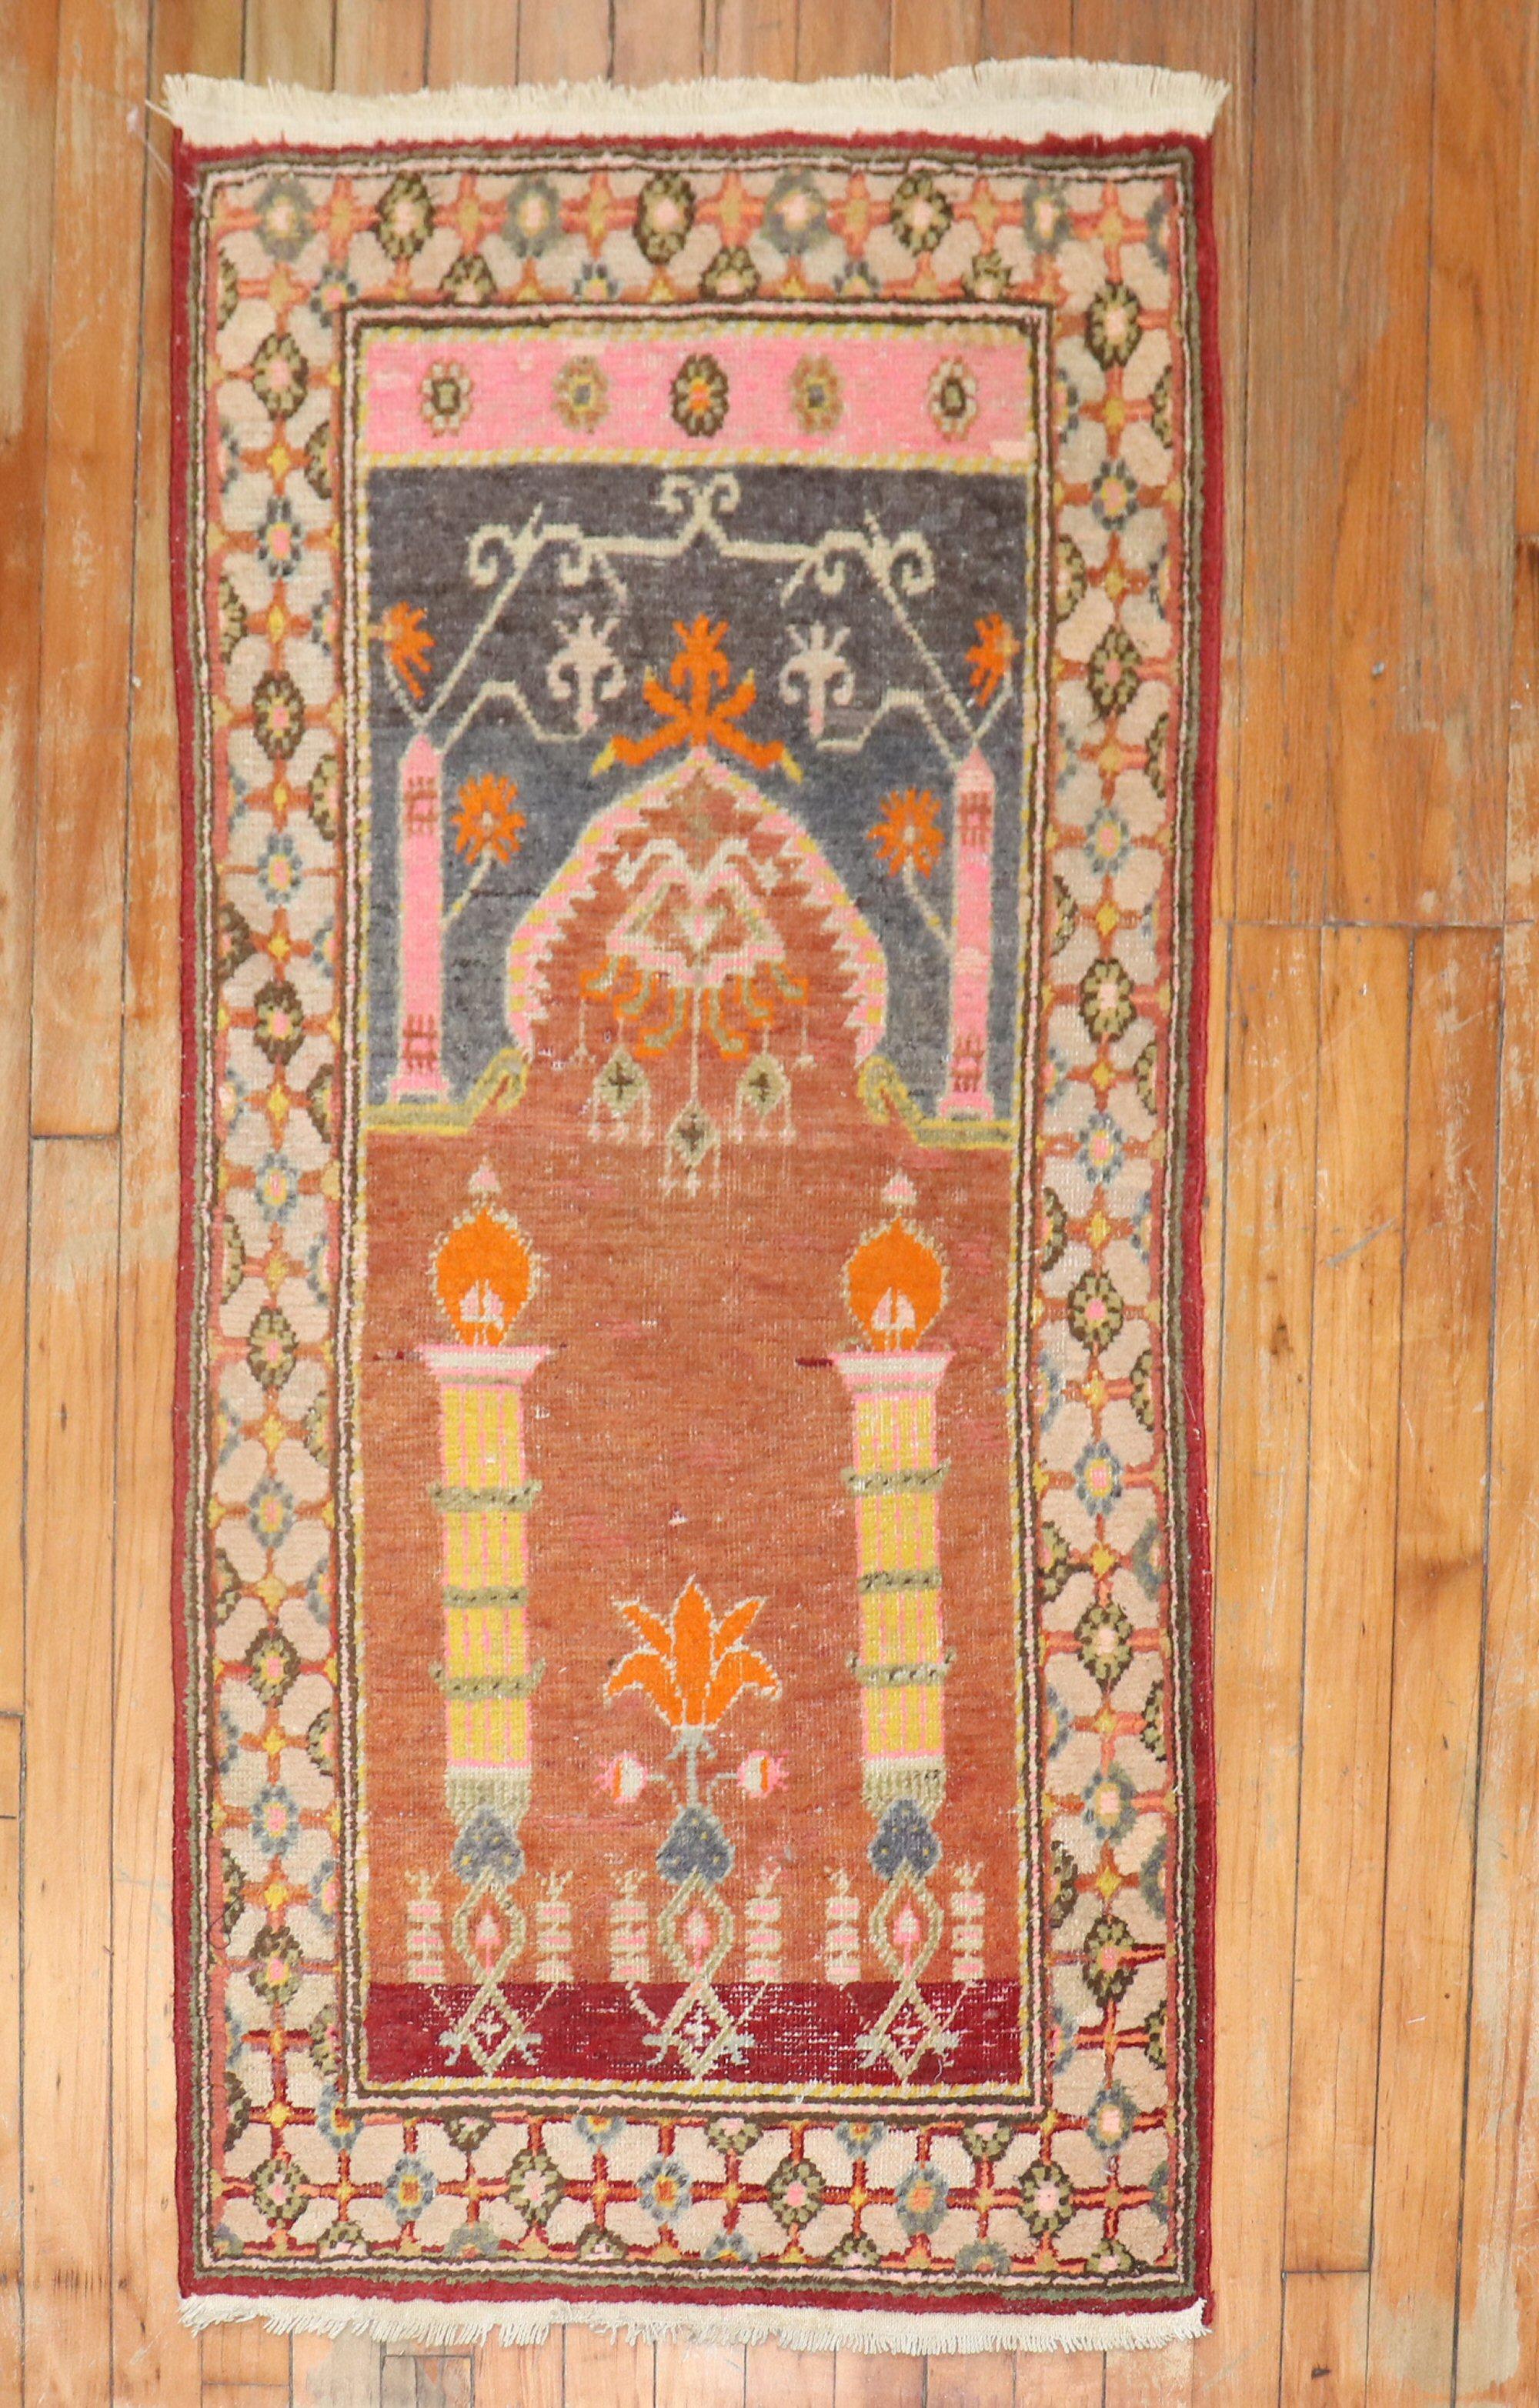 Rare tapis Khotan de petite taille à motif de niche en forme de prière, datant du début du 20e siècle.
nous n'avons jamais vu un tapis Khotan du Turkestan oriental avec ce motif de prière. Acheté auprès d'un collectionneur à Washington